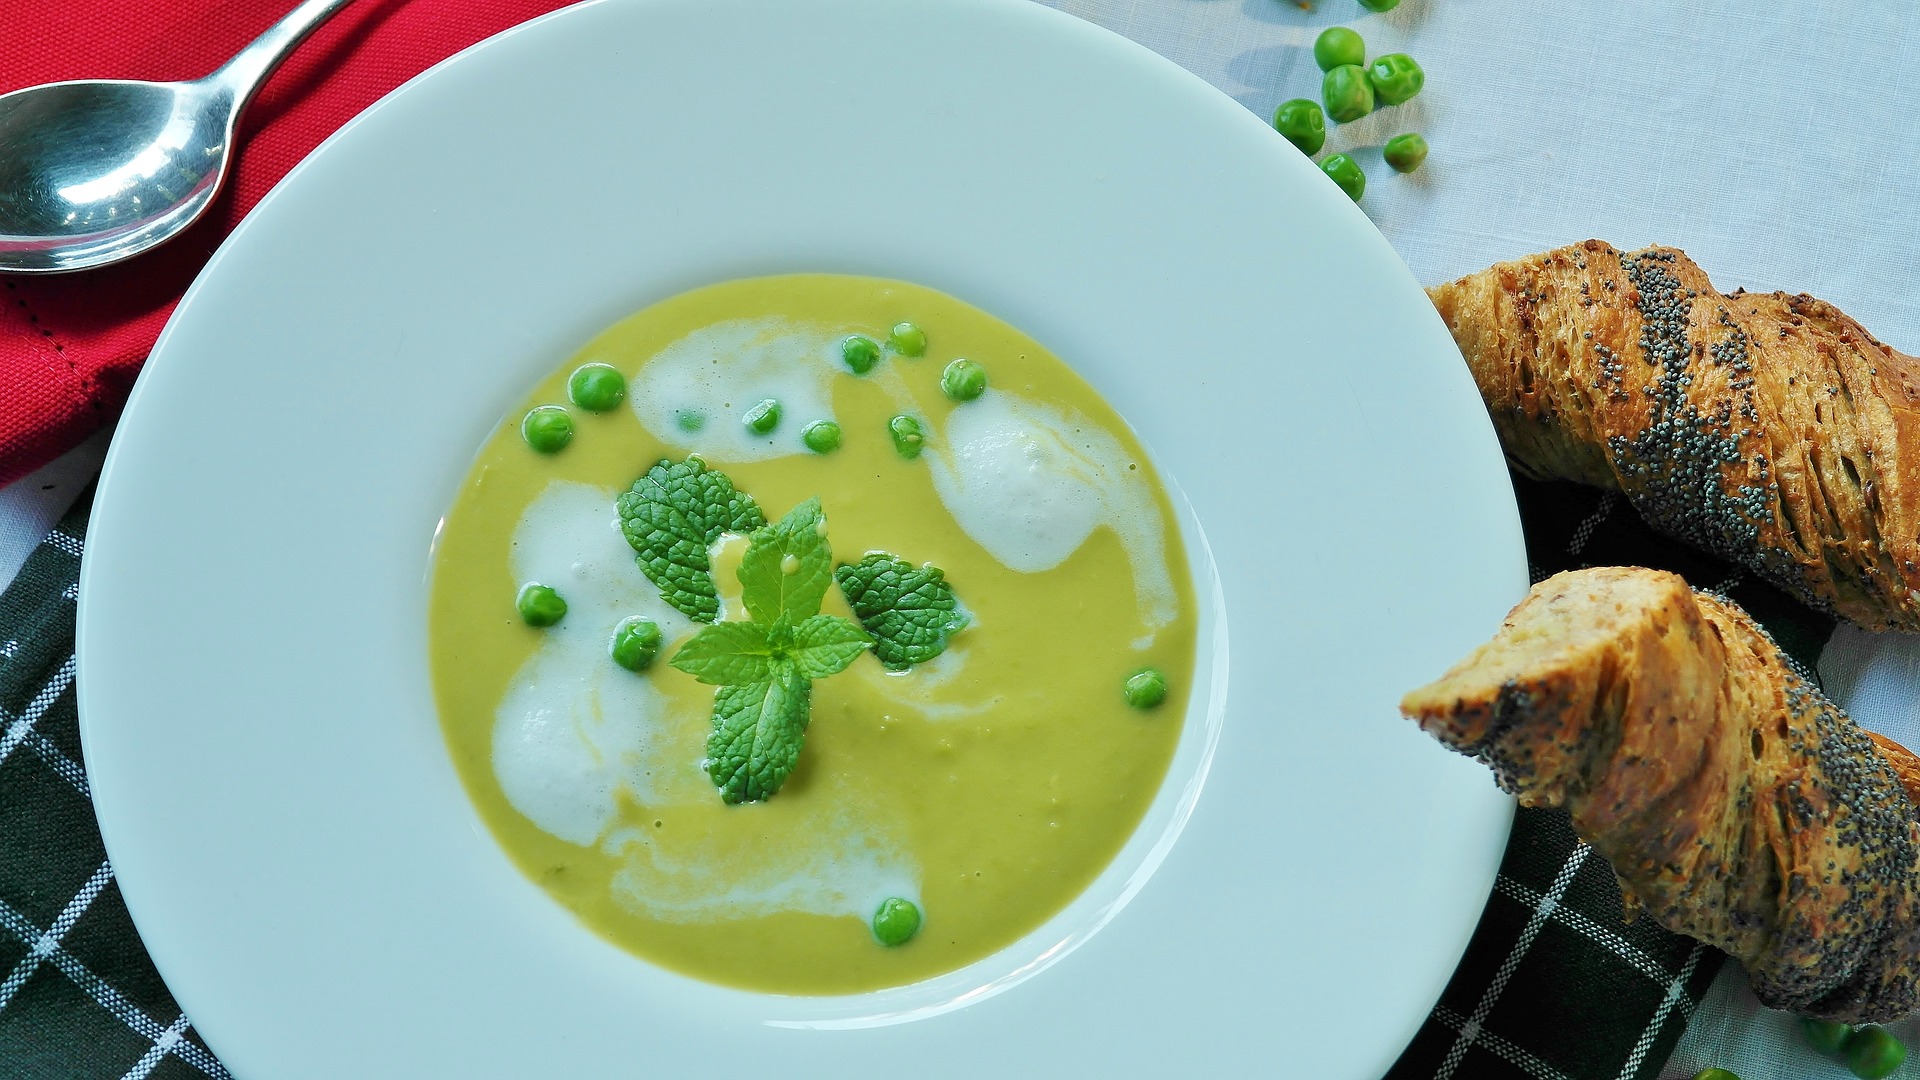 Sopa de banana verde para servir no almoço ou jantar